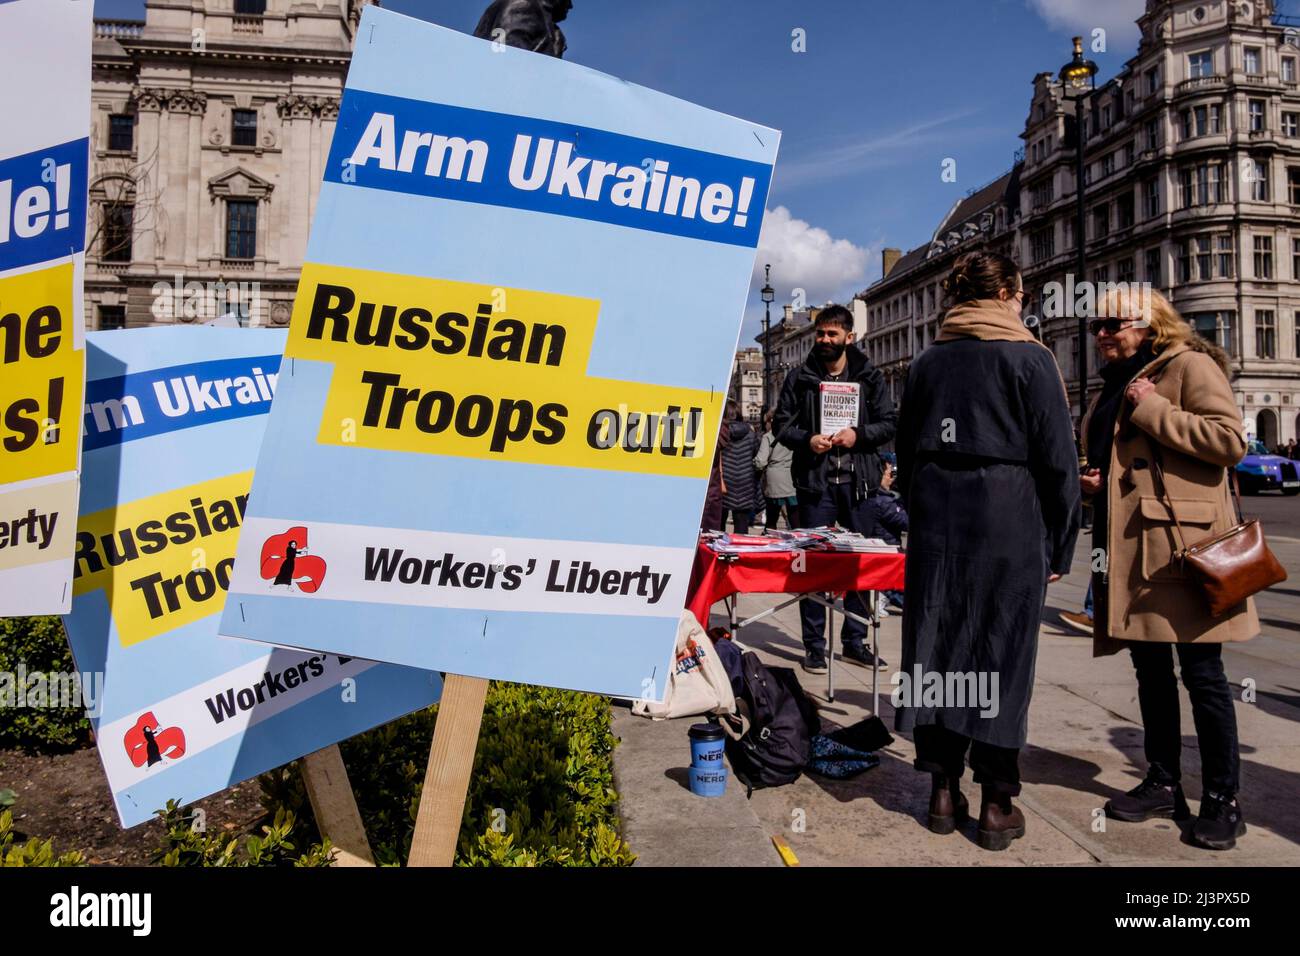 Londres, Royaume-Uni 9th avril 2022. Les syndicats du Royaume-Uni se rallient à l'Ukraine. Des pancartes réclamant l'armement de l'Ukraine et le retrait des troupes russes sont exposées au début du rallye. Banque D'Images